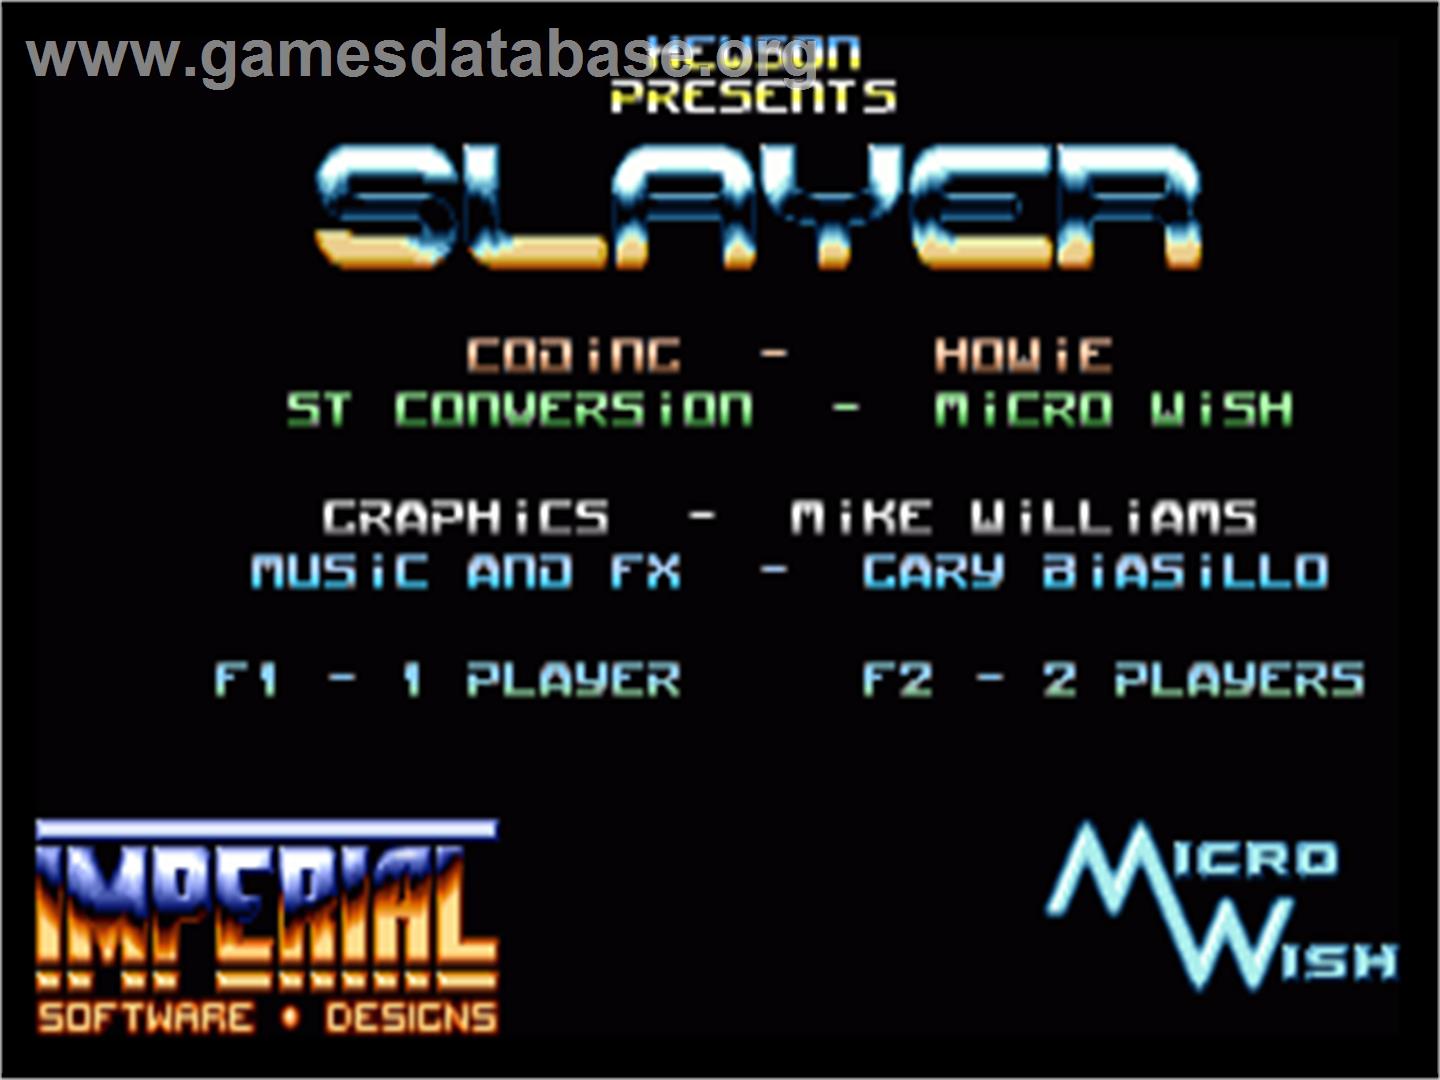 Slayer - Commodore Amiga - Artwork - Title Screen